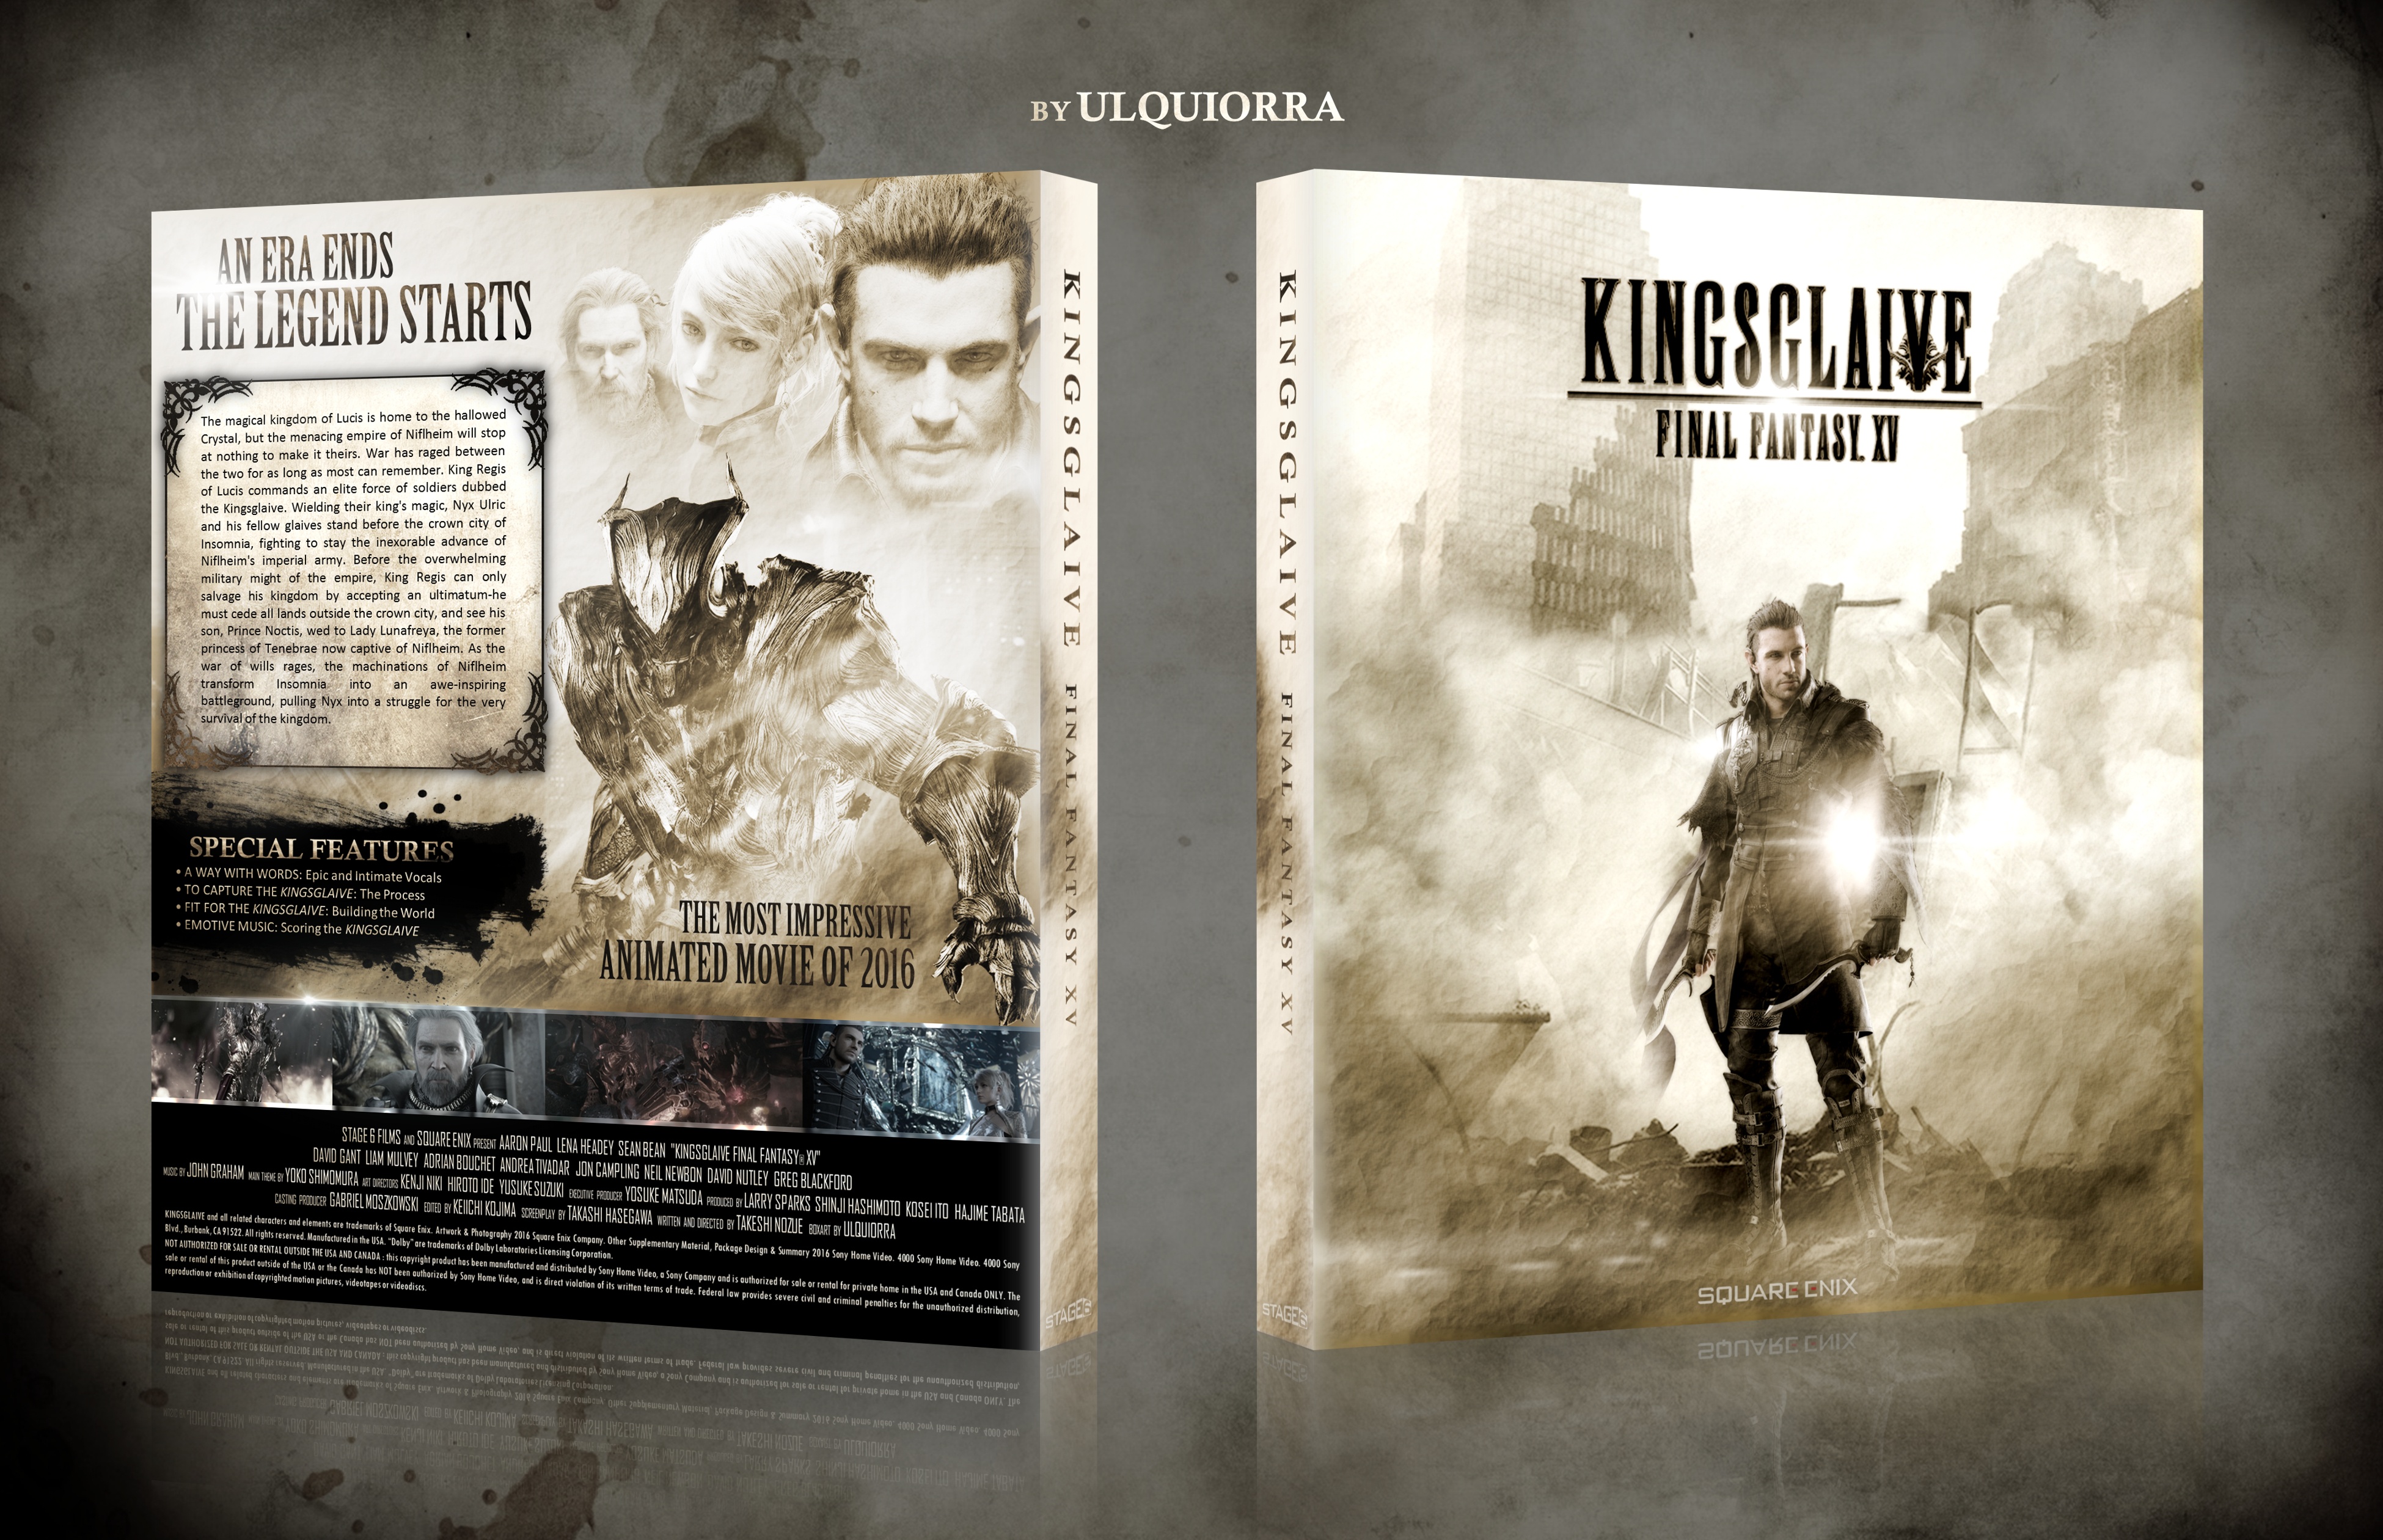 Kingsglaive Final Fantasy XV box cover